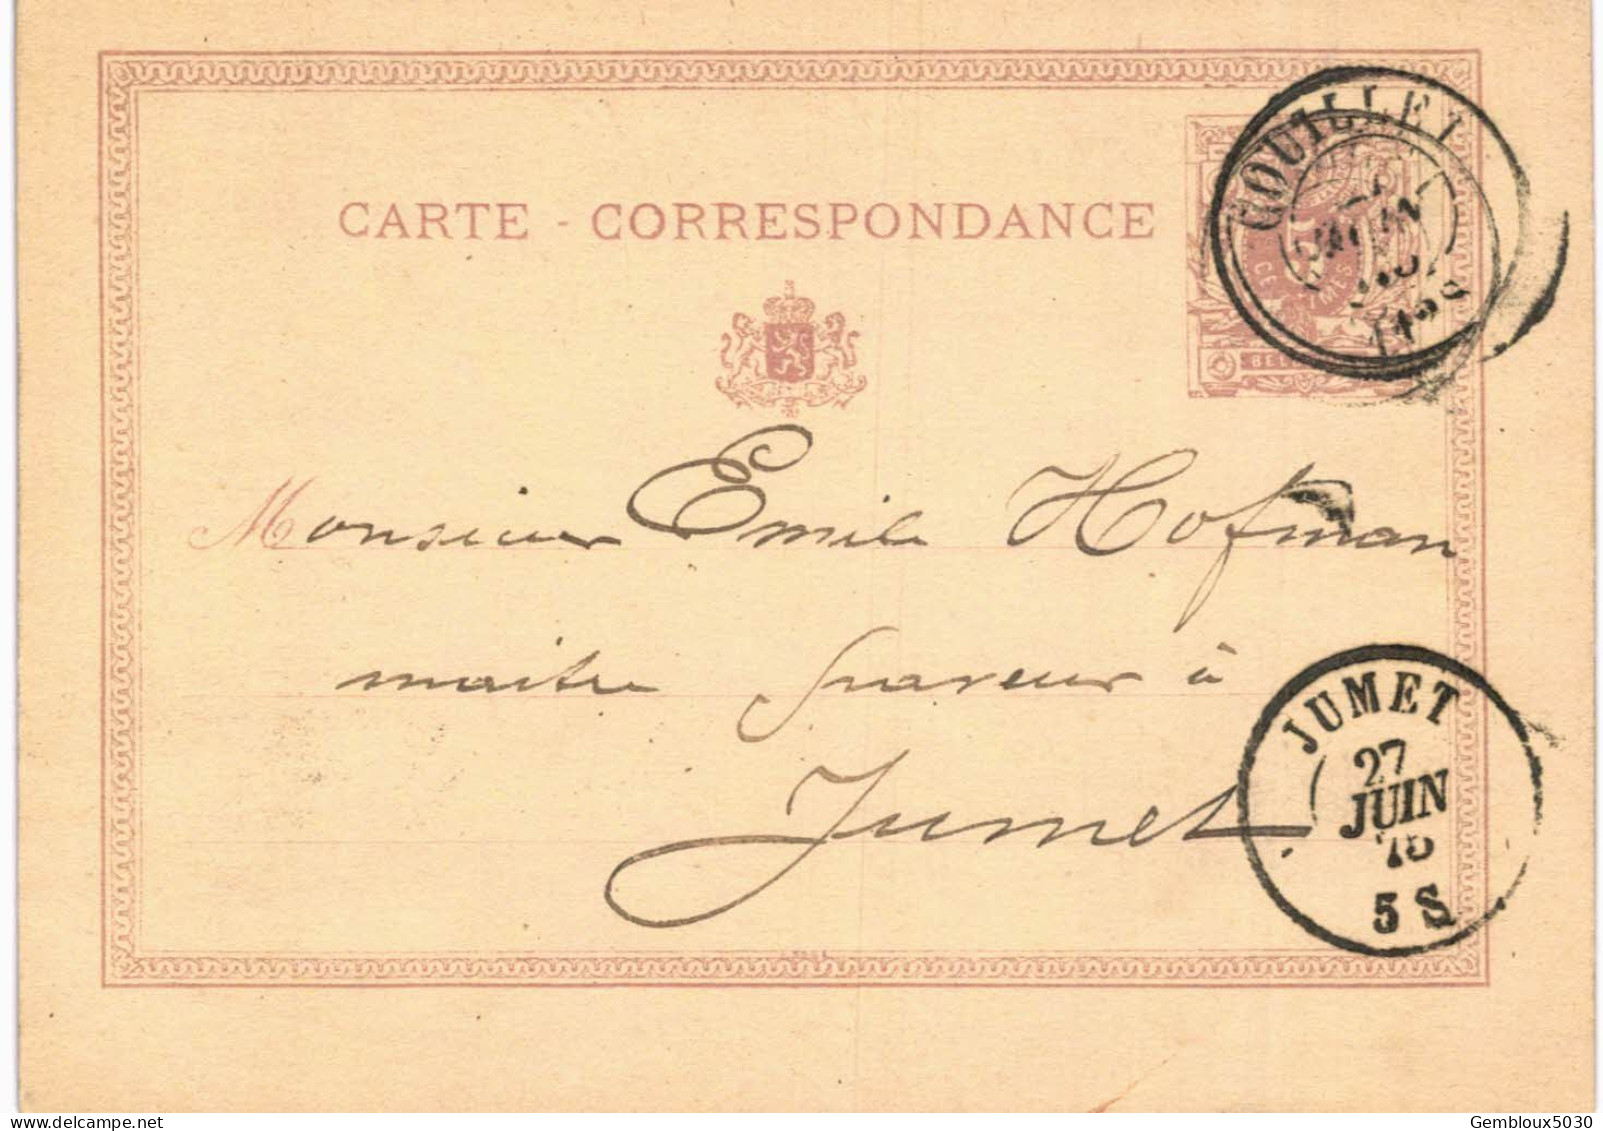 Carte-correspondance N° 28 écrite De Couillet Vers Jumet - Letter-Cards